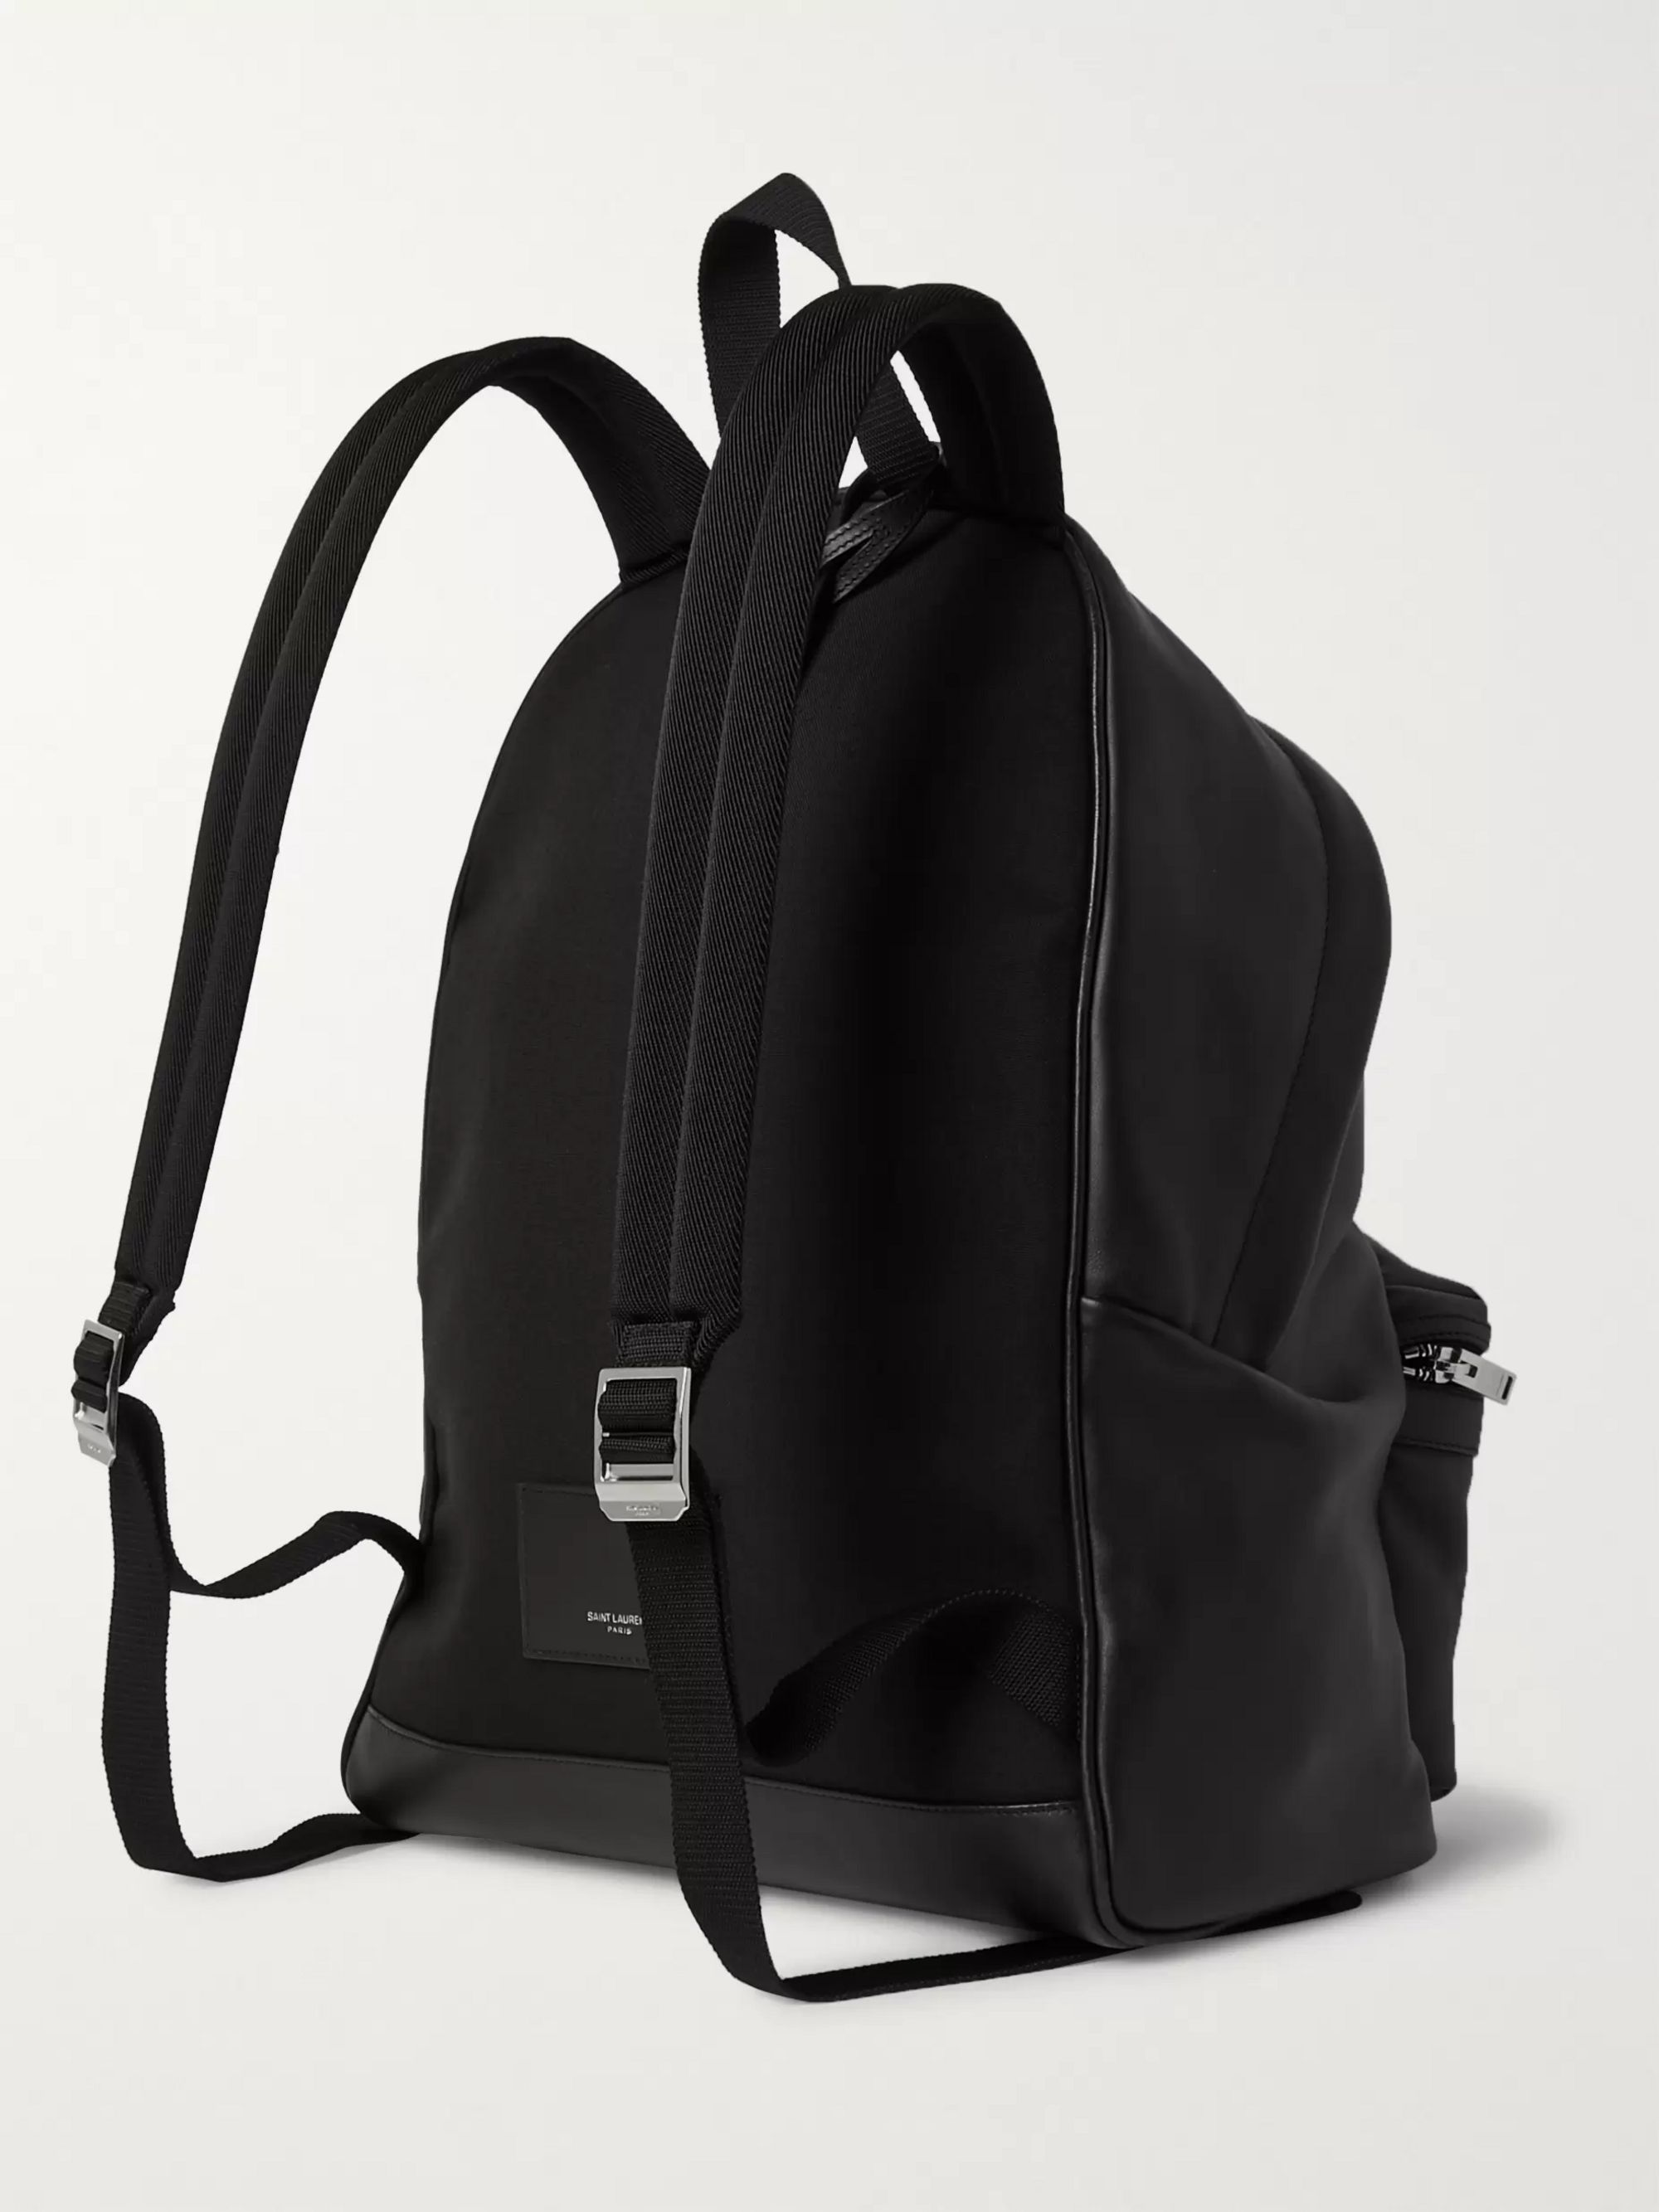 Black City Leather Backpack | SAINT LAURENT | MR PORTER